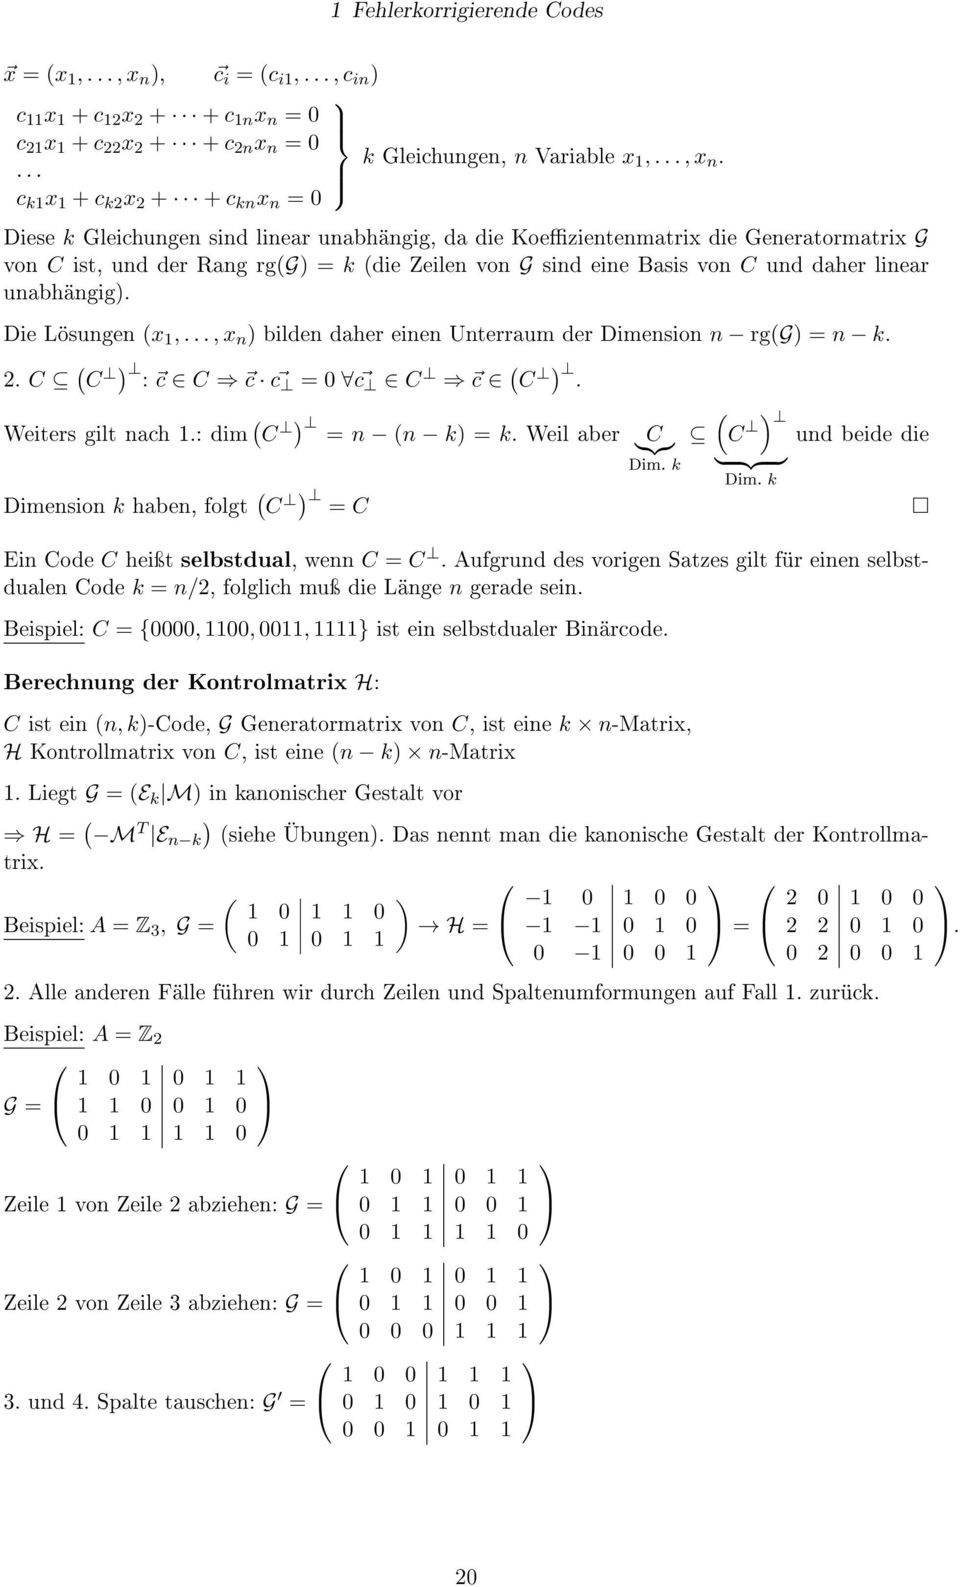 c k1 x 1 + c k2 x 2 + + c kn x n = 0 Diese k Gleichungen sind linear unabhängig, da die Koezientenmatrix die Generatormatrix G von C ist, und der Rang rg(g) = k (die Zeilen von G sind eine Basis von